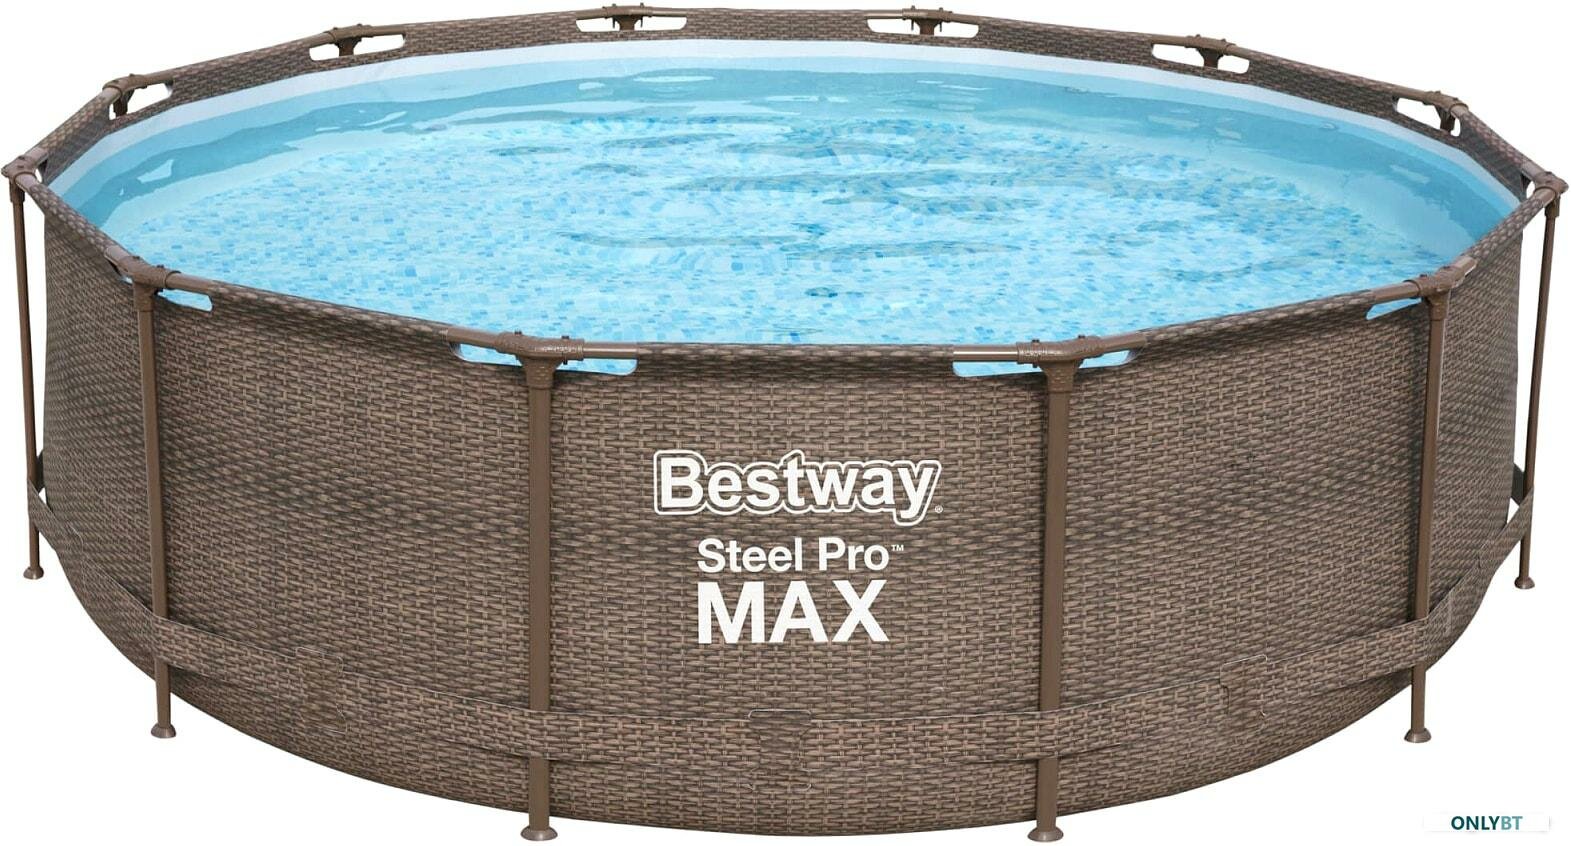 Бассейн каркасный Bestway "Steel Pro" размер 366 х 100 см фильтр-насос лестница 56709